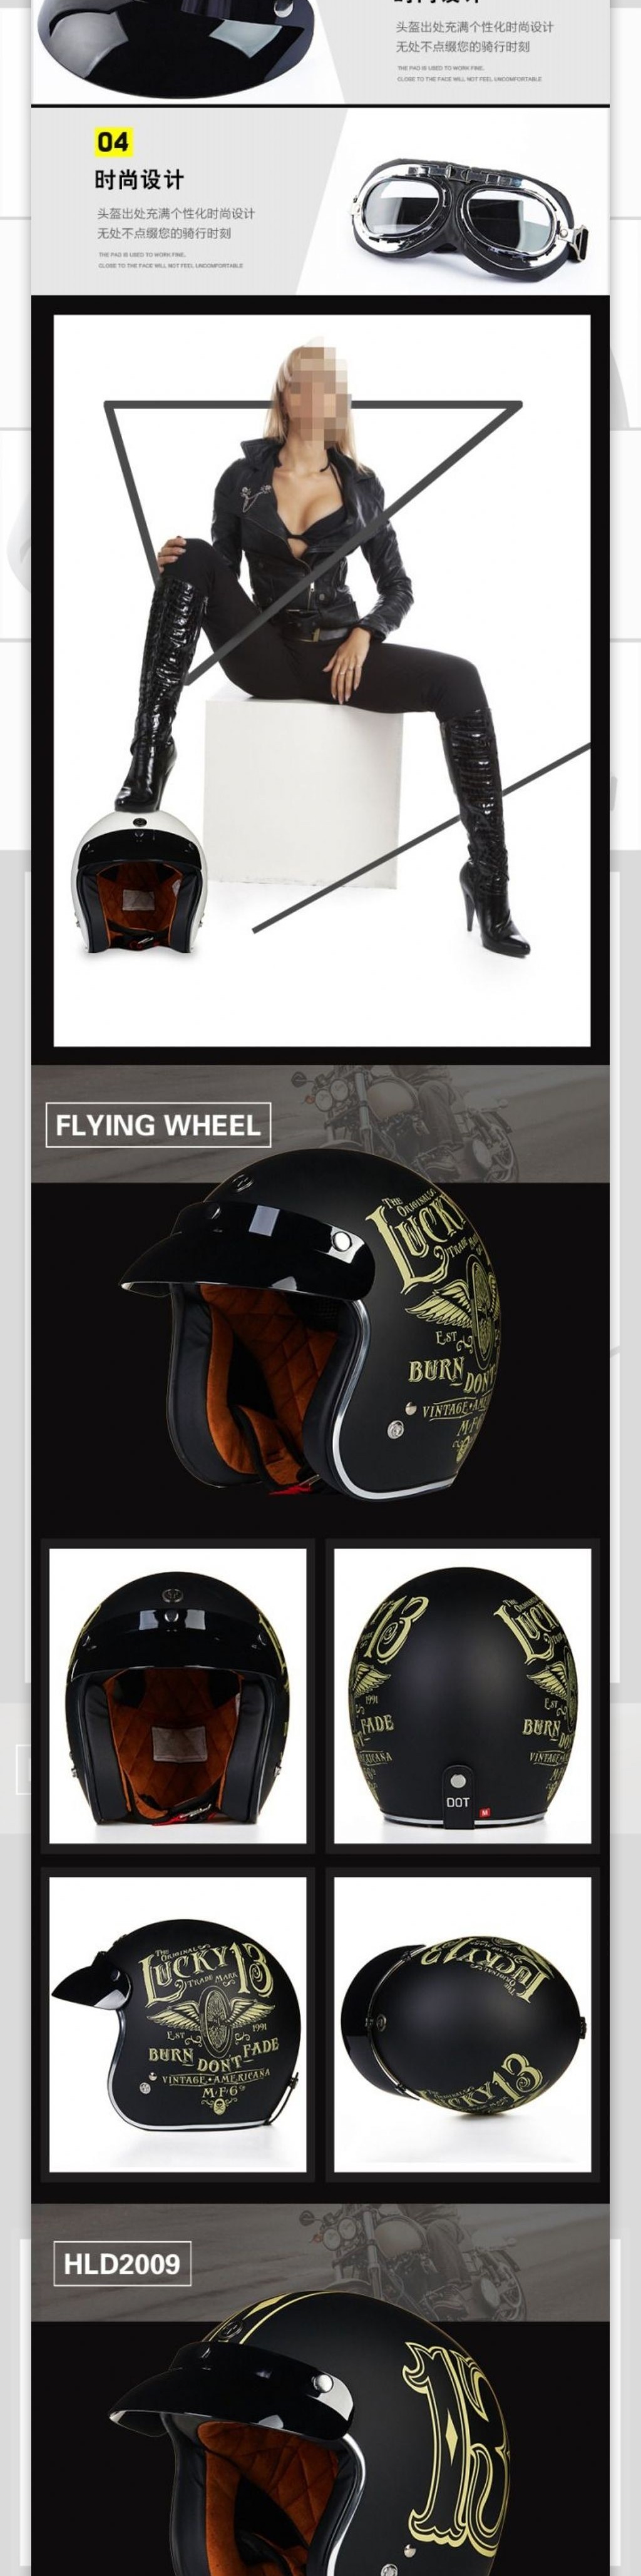 摩托车头盔详情页设计